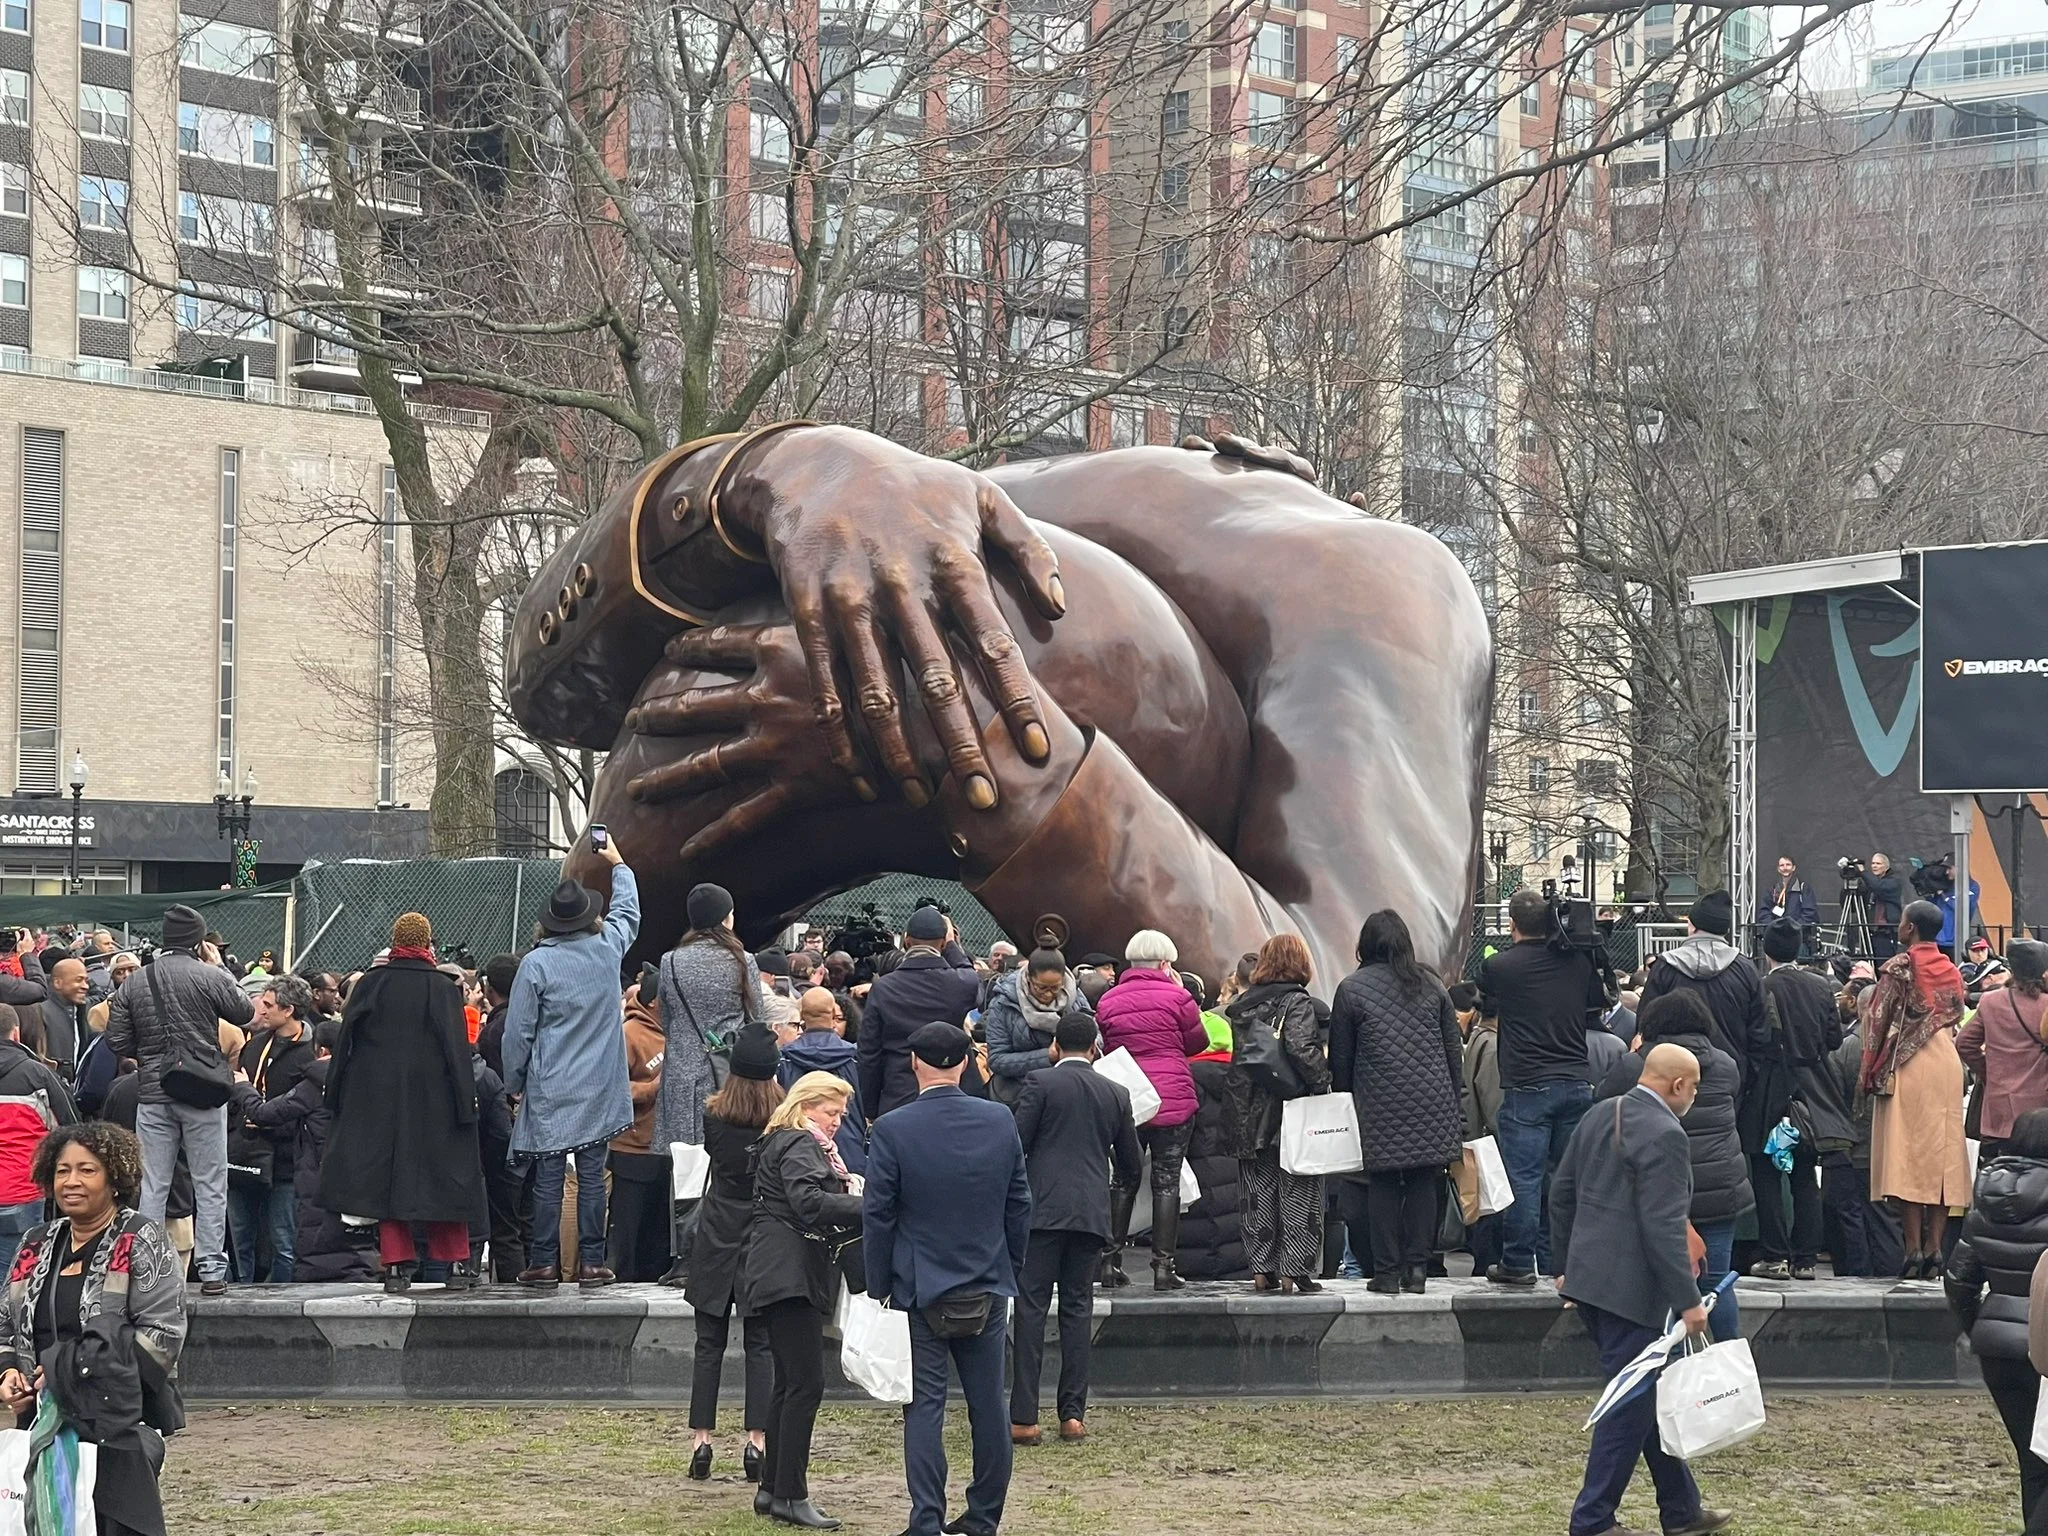 波士顿公园雕塑《拥抱》揭幕 以纪念马丁·路德·金和科雷塔·斯科特·金